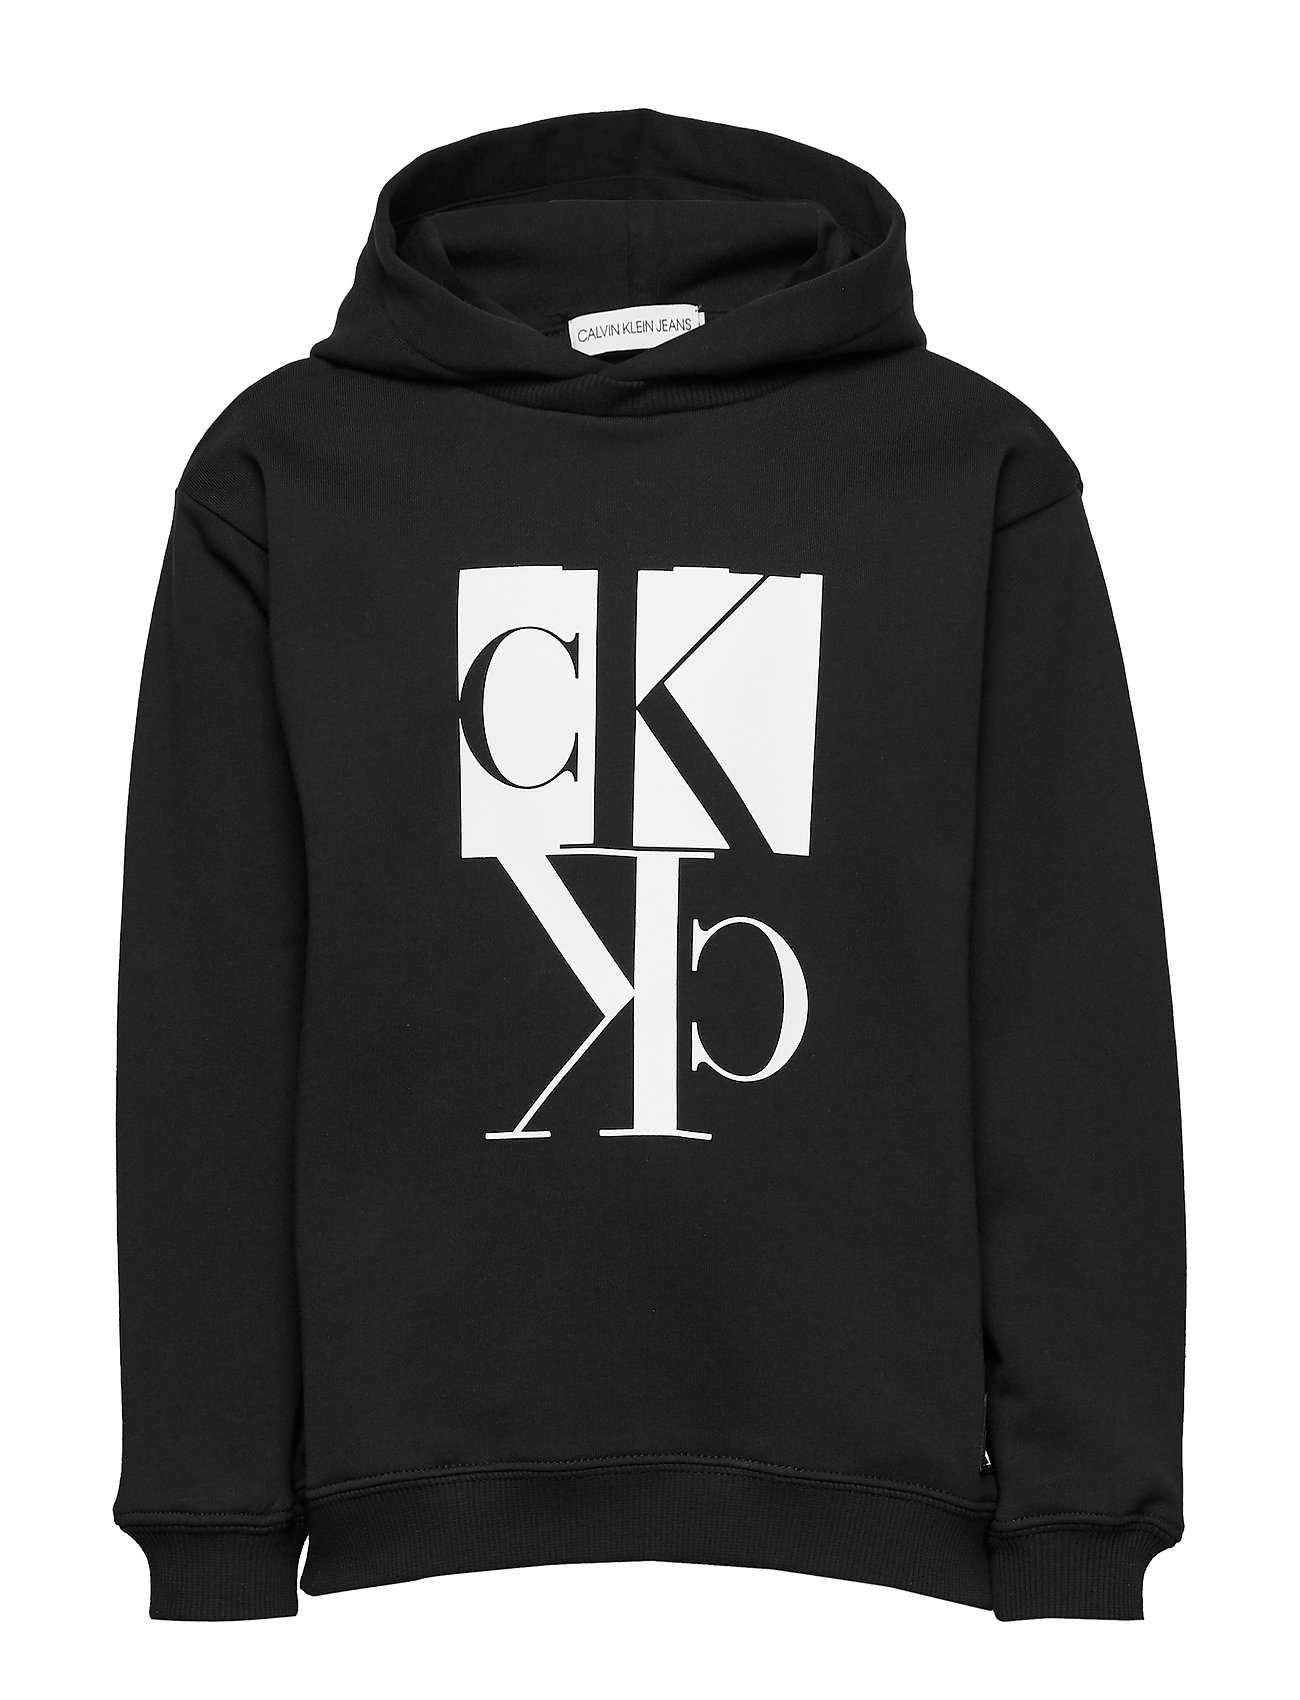 Calvin Klein Ck Hoodie Best Sale, 53% OFF | www.ingeniovirtual.com